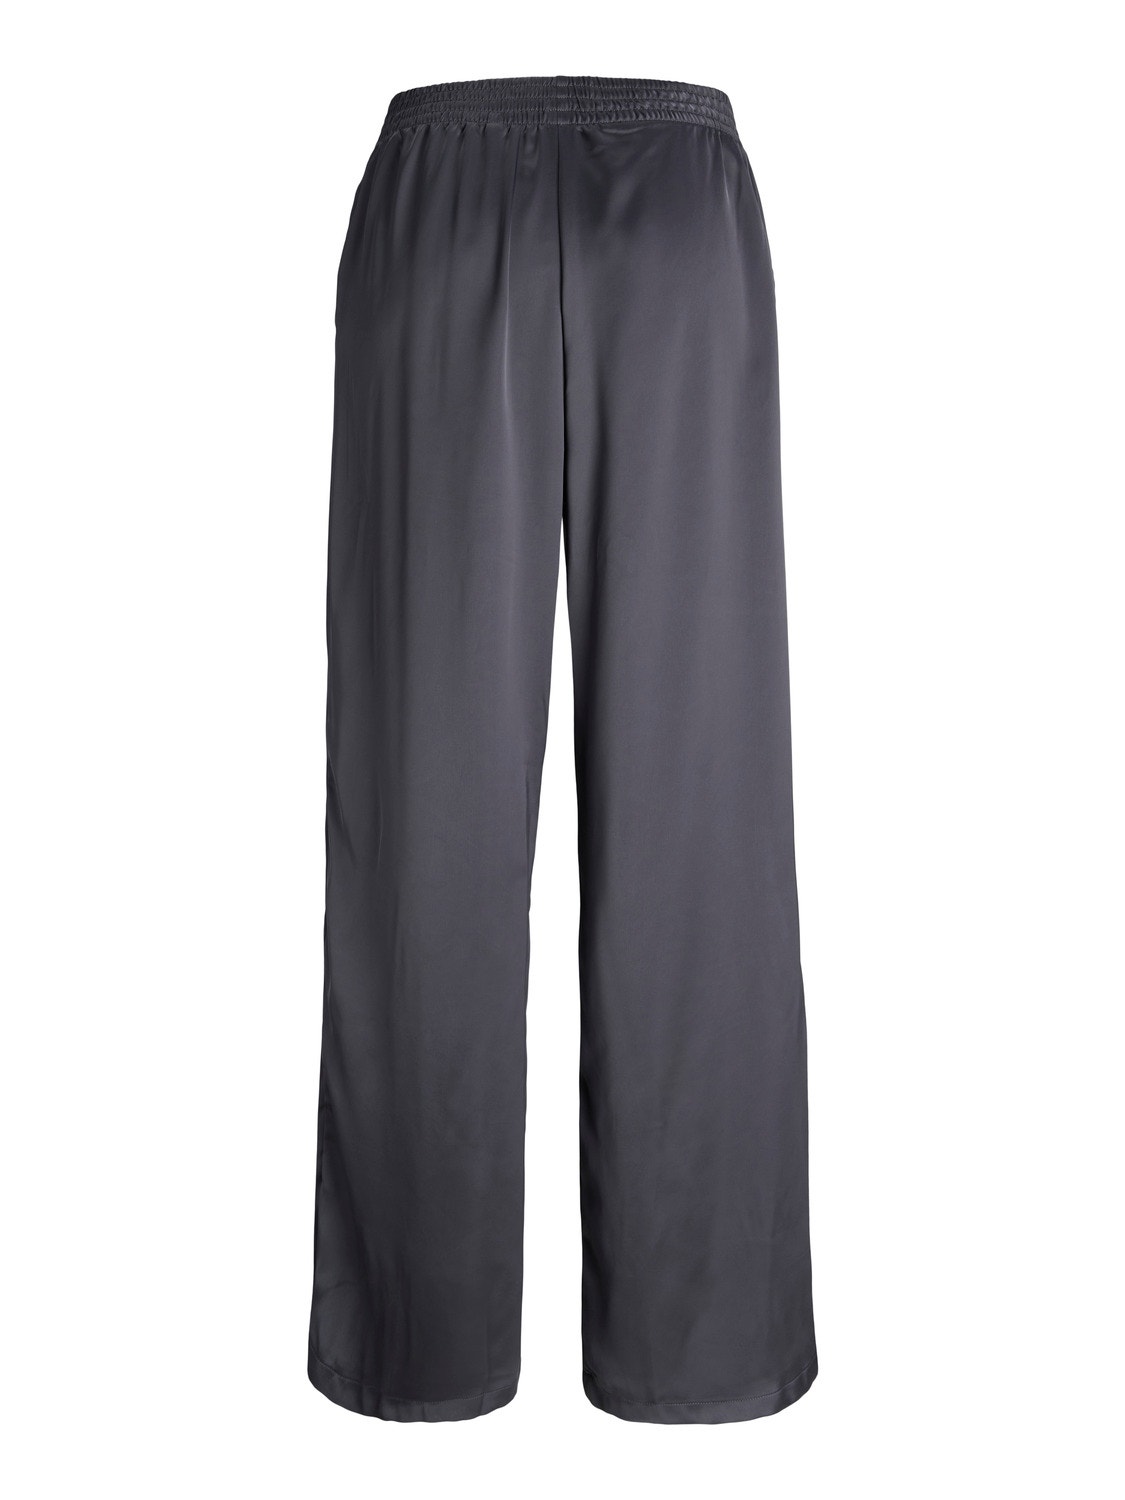 JJXX JXKIRA Classic trousers -Asphalt - 12200161